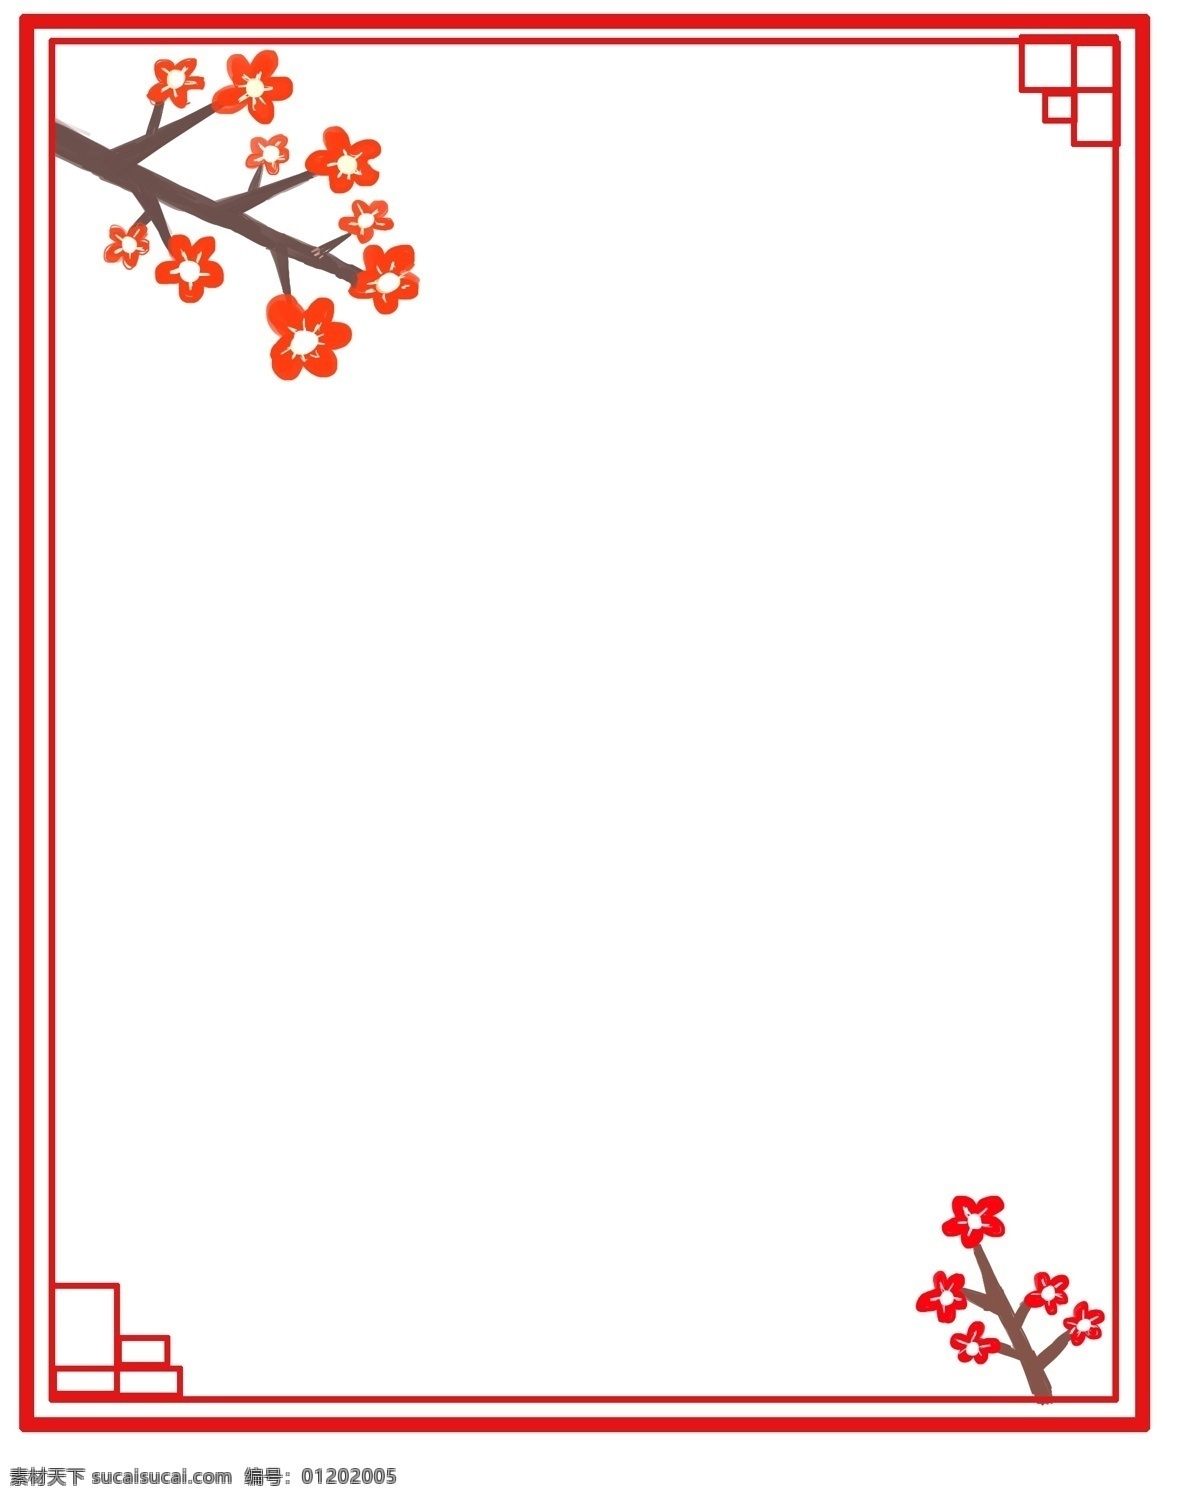 树枝 红色 梅花 边框 瑞雪兆丰年 画面 主体 左上角 右下角 枝条 组成 上 中 点缀 白色 花蕊 落 满 雪花 寓意是冬天